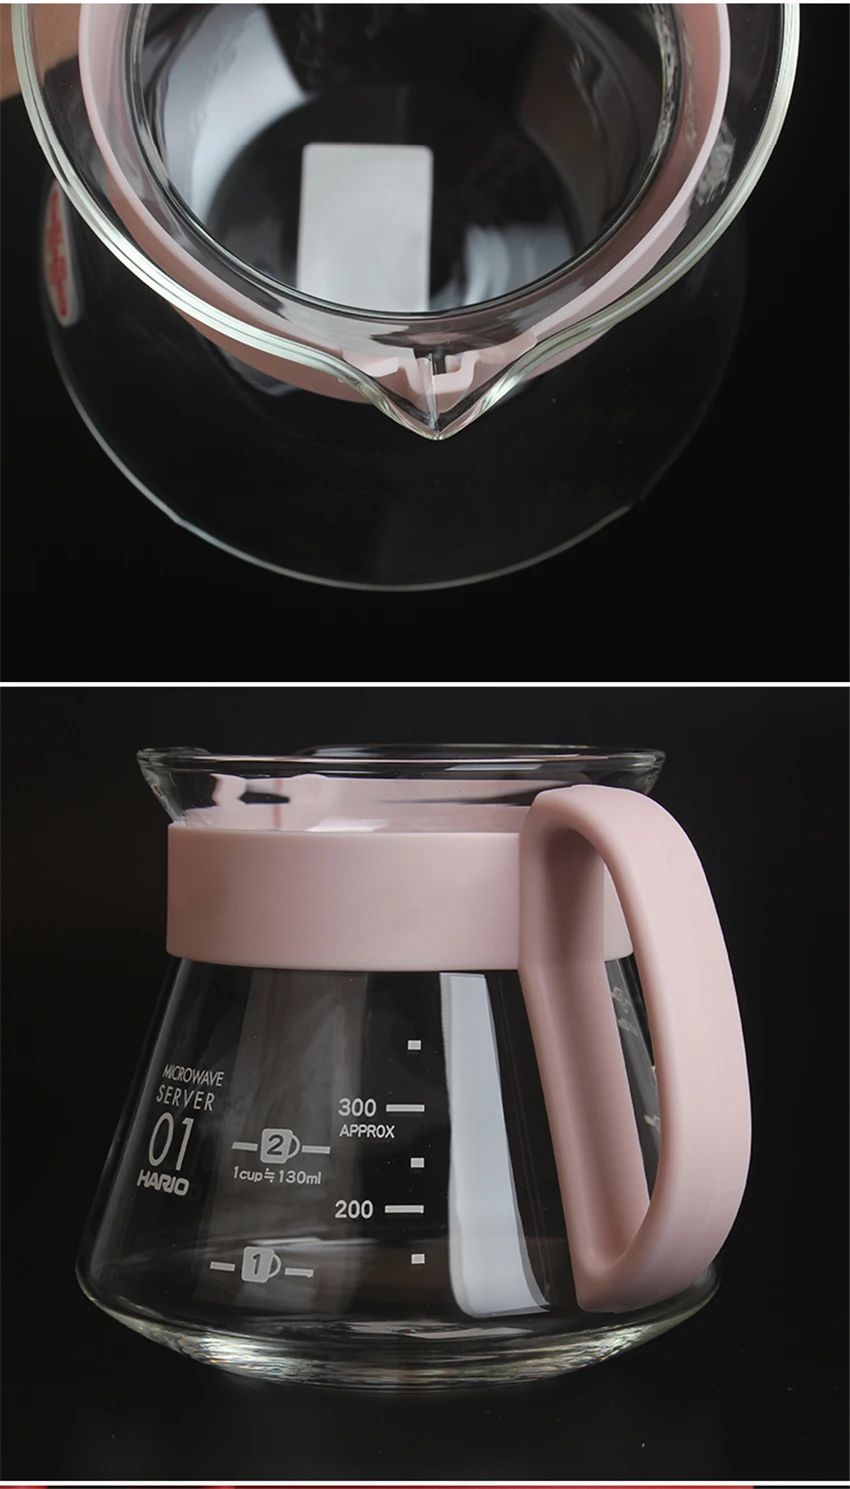 Кофейник с воронкой Hario V60 стиль капельная Кофеварка капсула Перманентный залейте горшок для заваривания кофе на 1-4 чашки принадлежности для кофе аксессуары